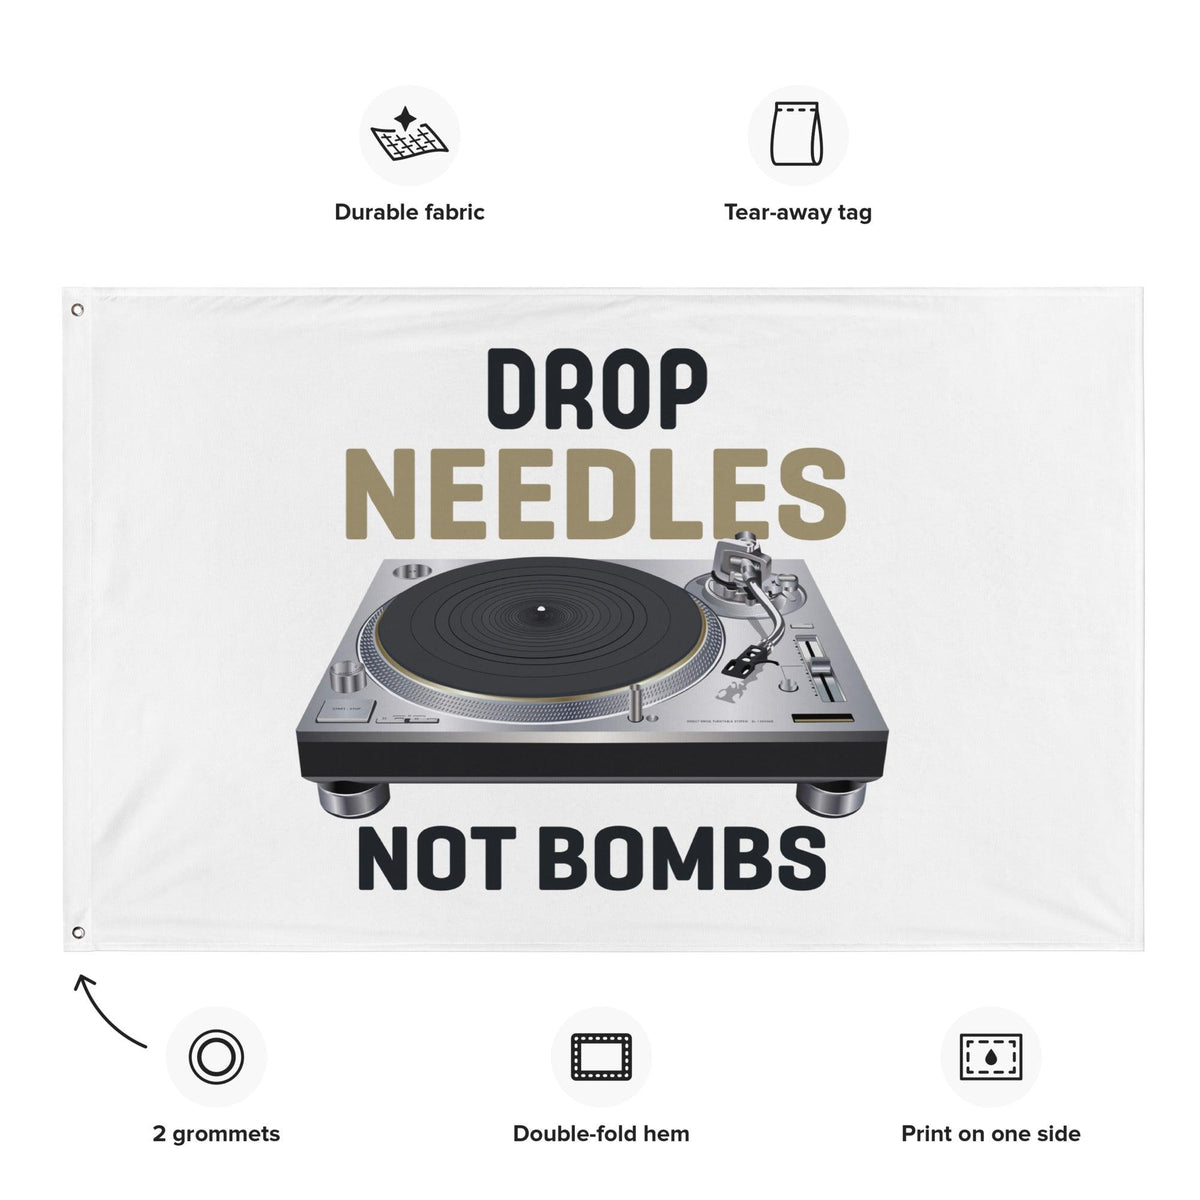 Technics Turntable Artist Rendition "Drop Needles Not Bombs" Flag (Horizontal) - Tedeschi Studio, LLC.